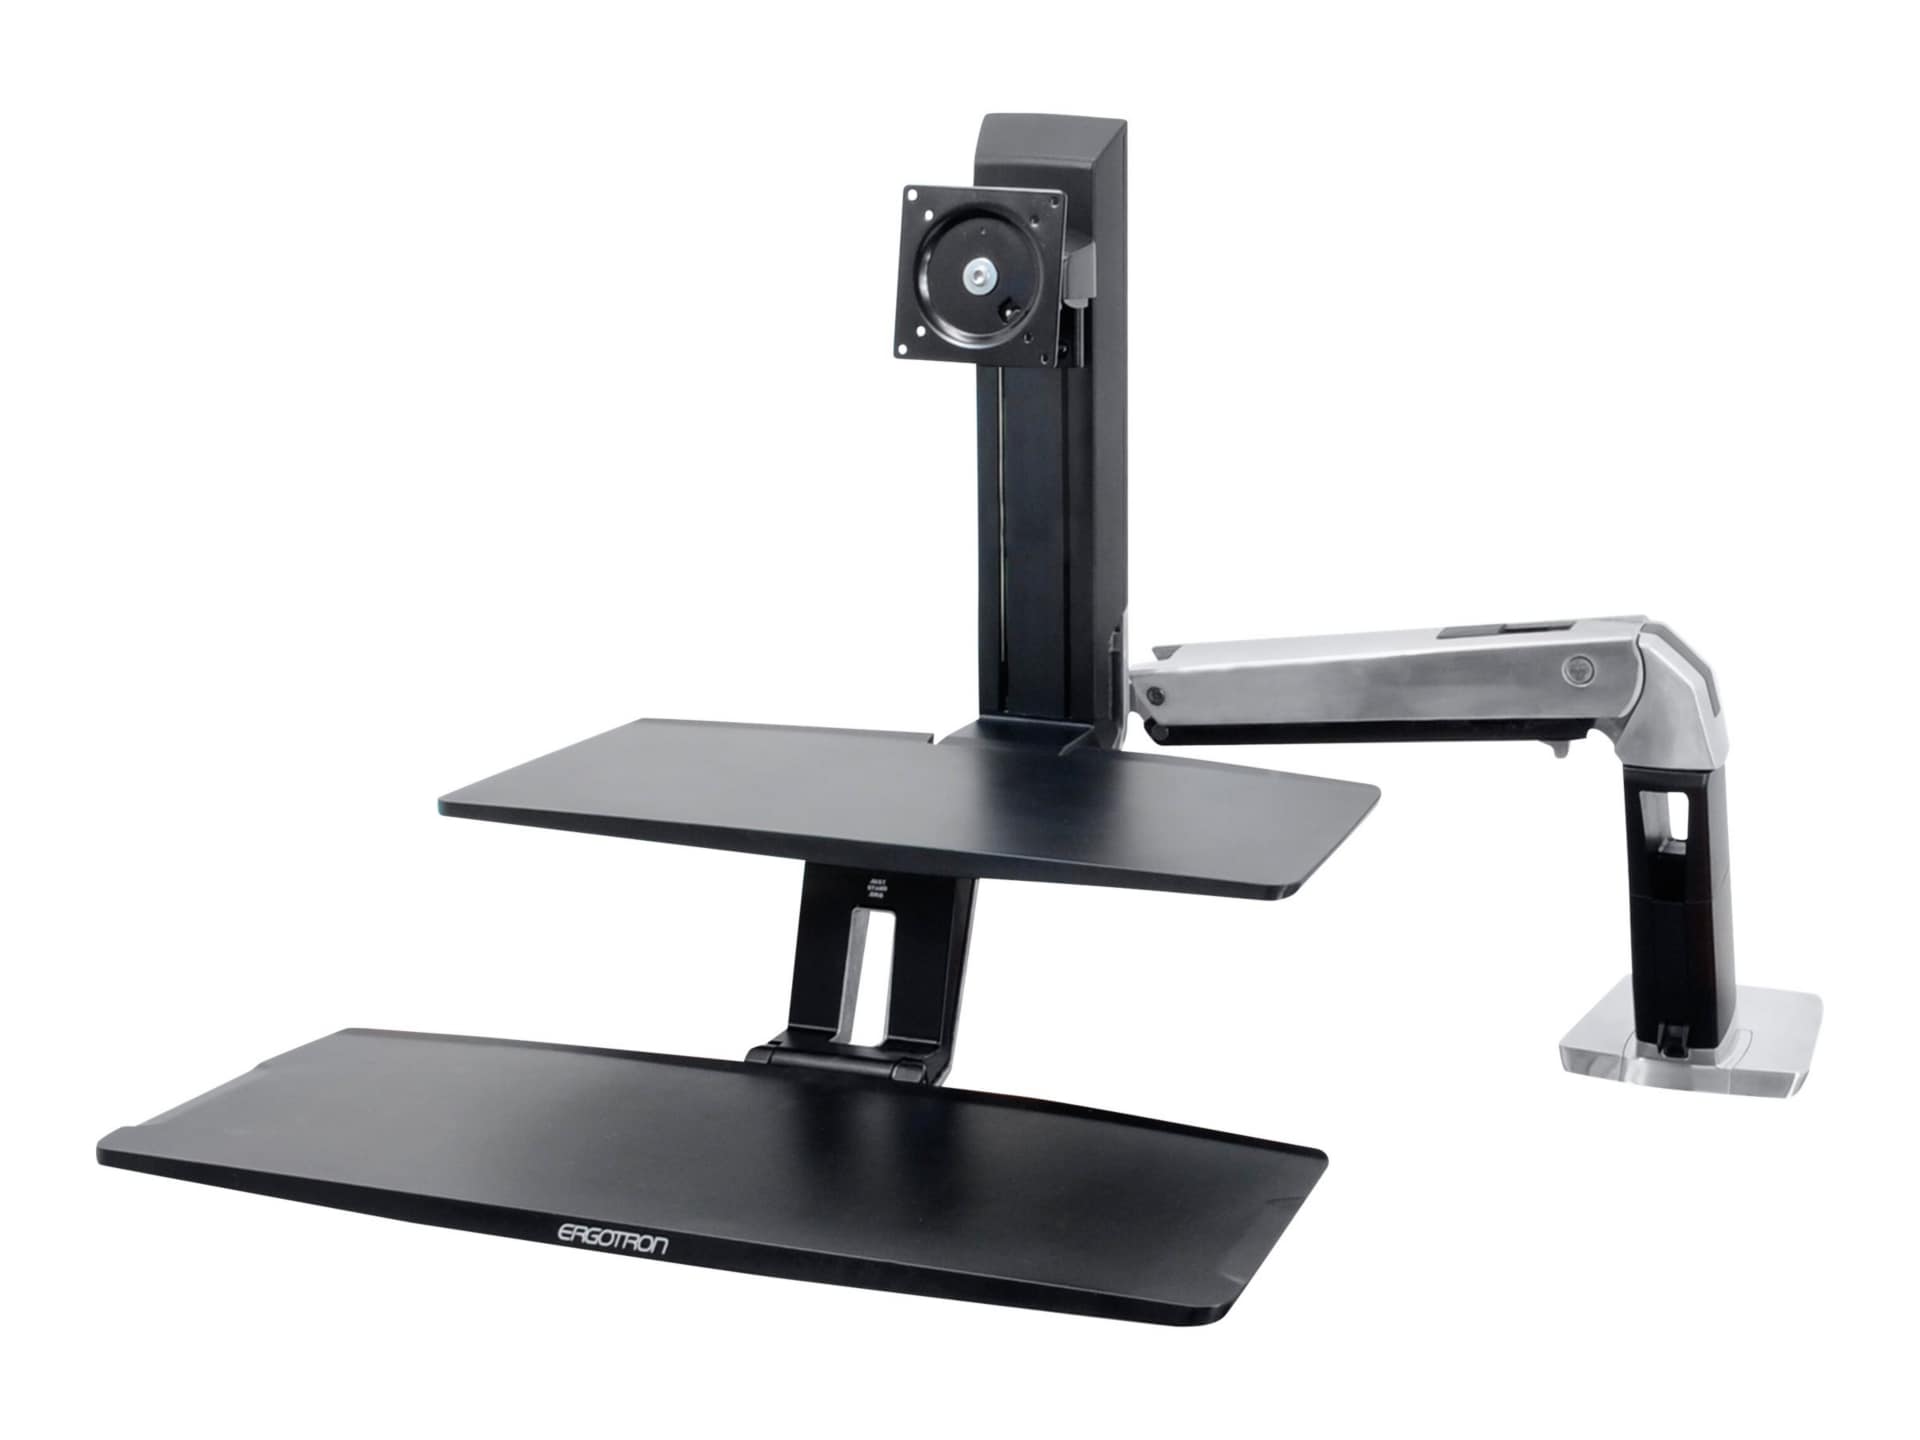 Ergotron WorkFit-A Single LD Workstation With Suspended Keyboard - standing desk converter - black, polished aluminum